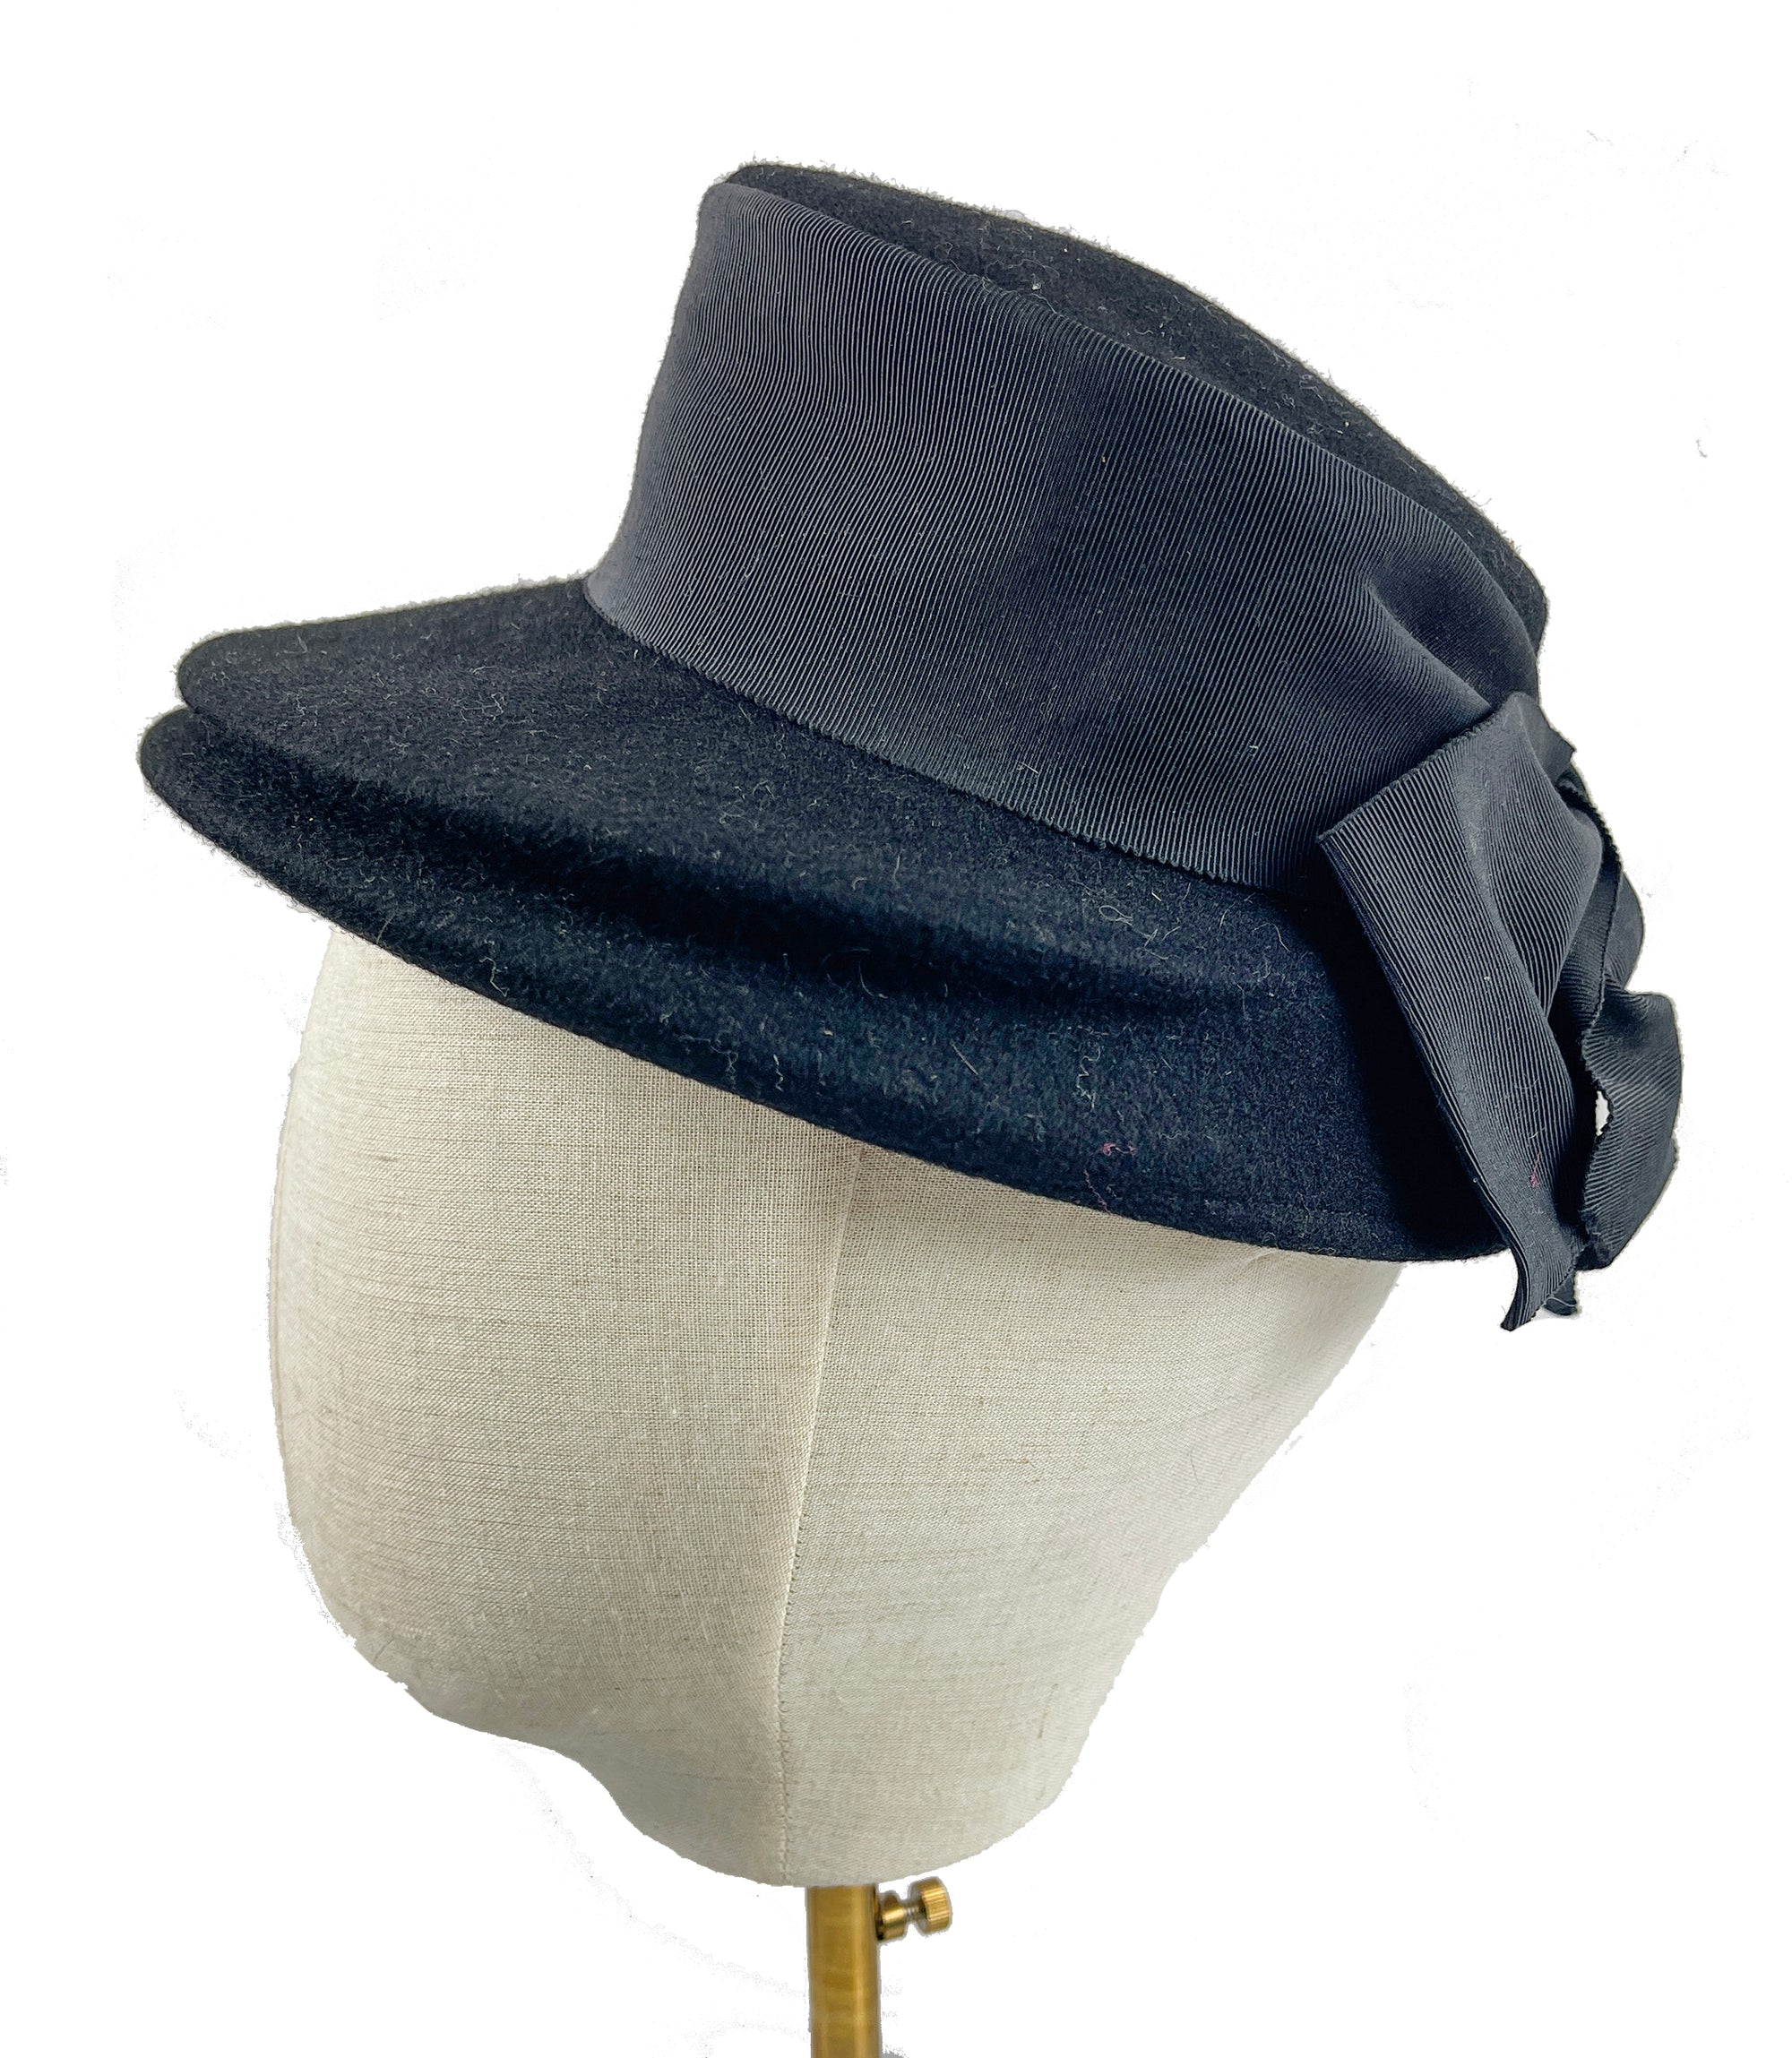 Vintage Bon Marche Black Felt Tilted Fascinator Hat